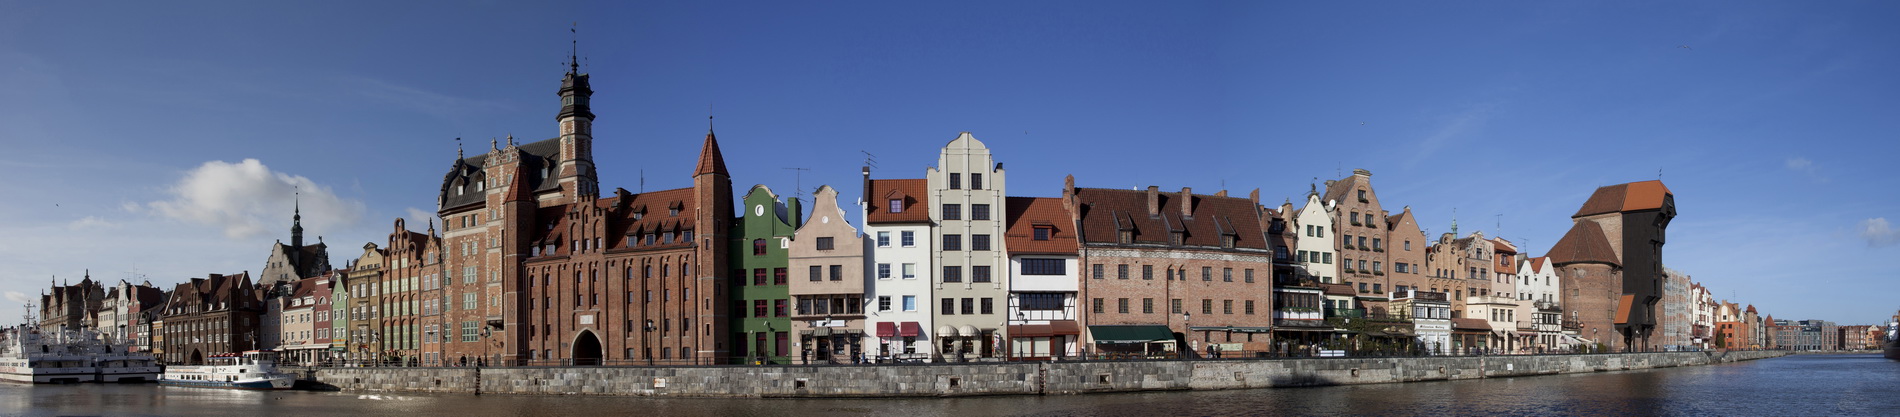 Gdańsk - panorama na stare miasto.